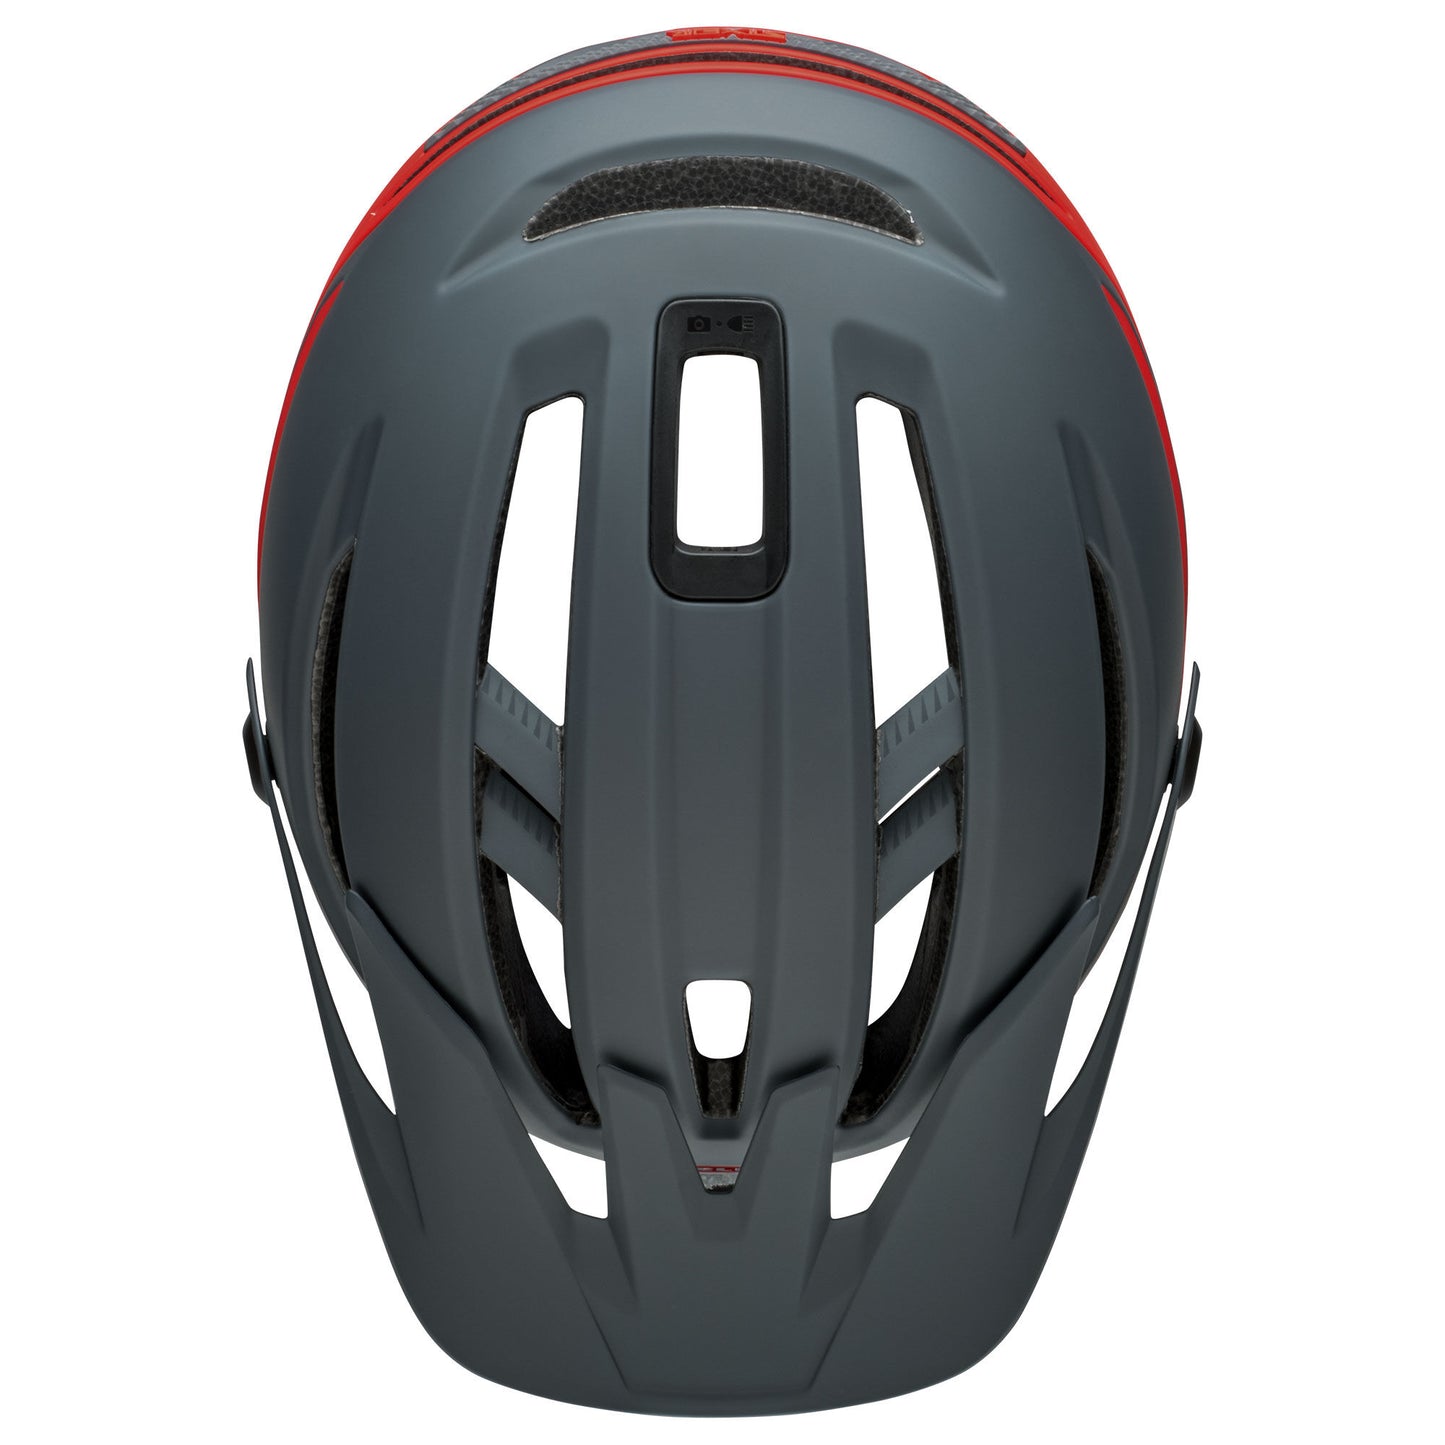 Bell Sixer MIPS Helmet Matte Gray/Red Bike Helmets